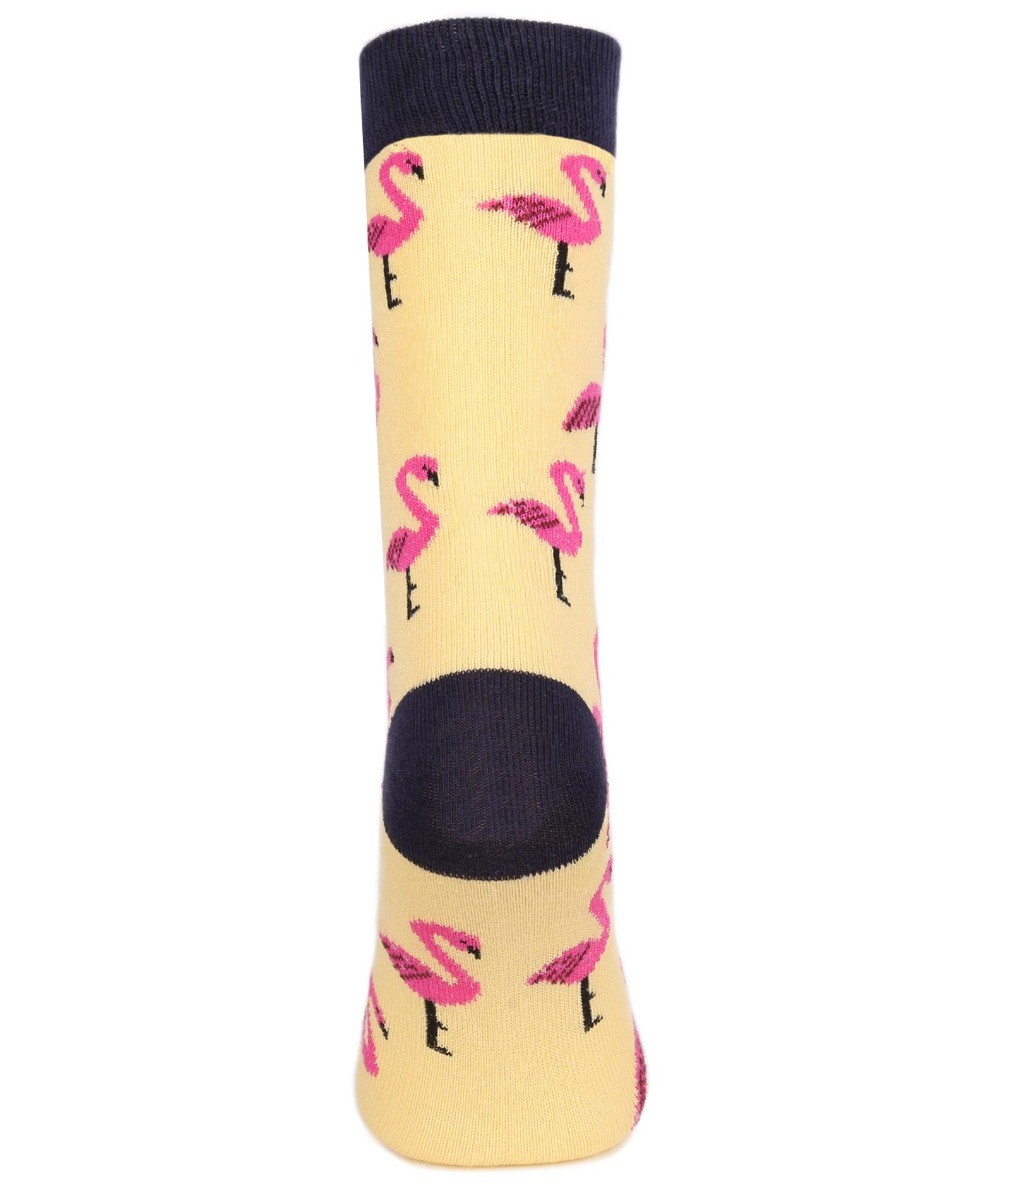 Unisex Kinder Flamingo Socken - Neuheit - Gelb - Pink Navy Blau